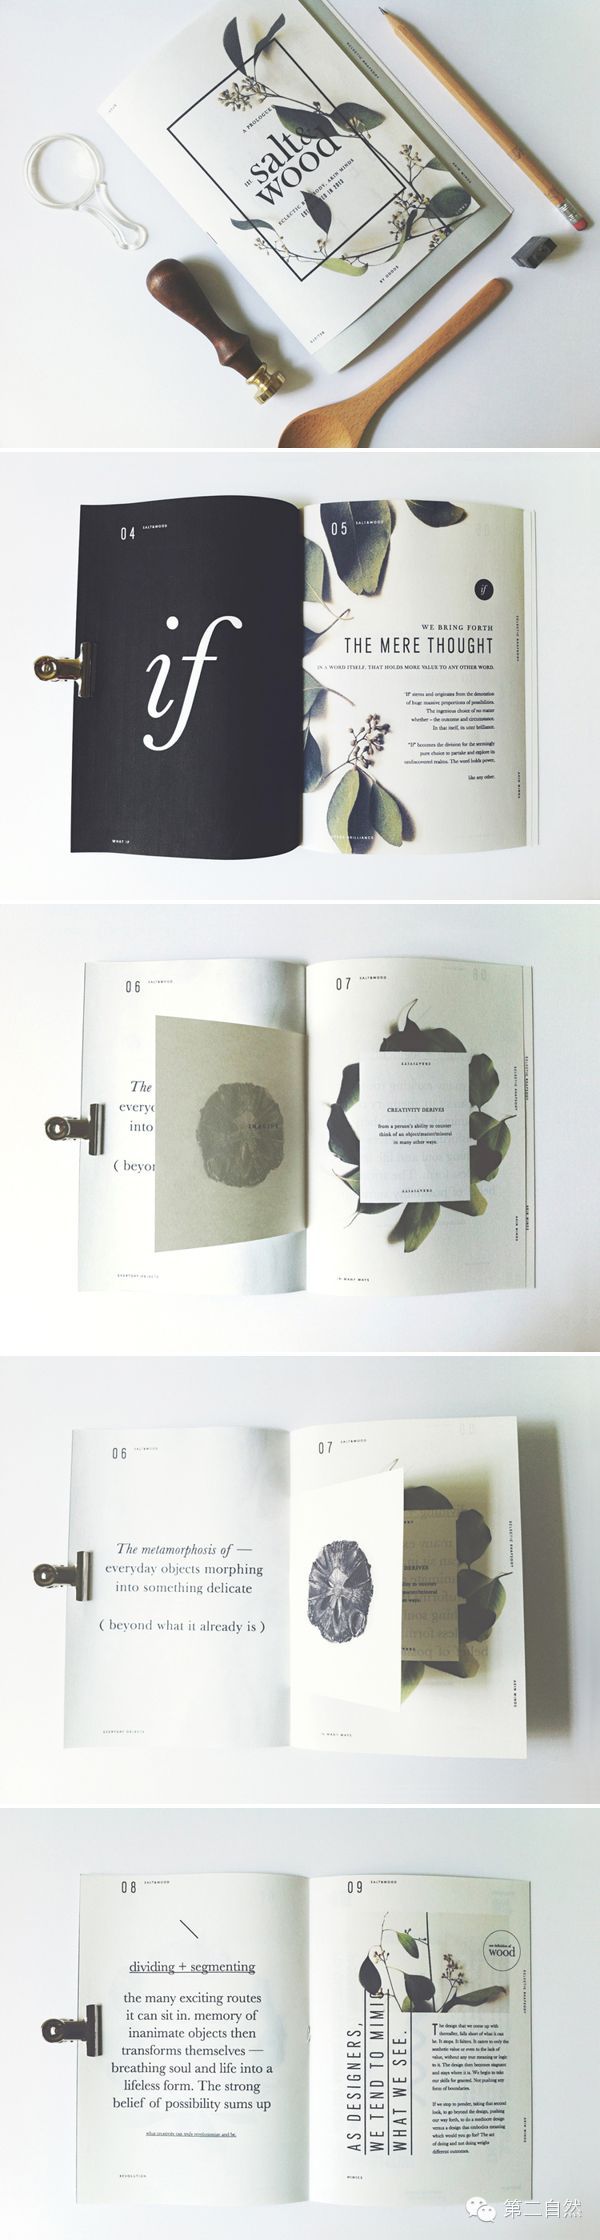 版式设计都包含着设计者的独运匠心,像上个月我们分享王志弘的书籍